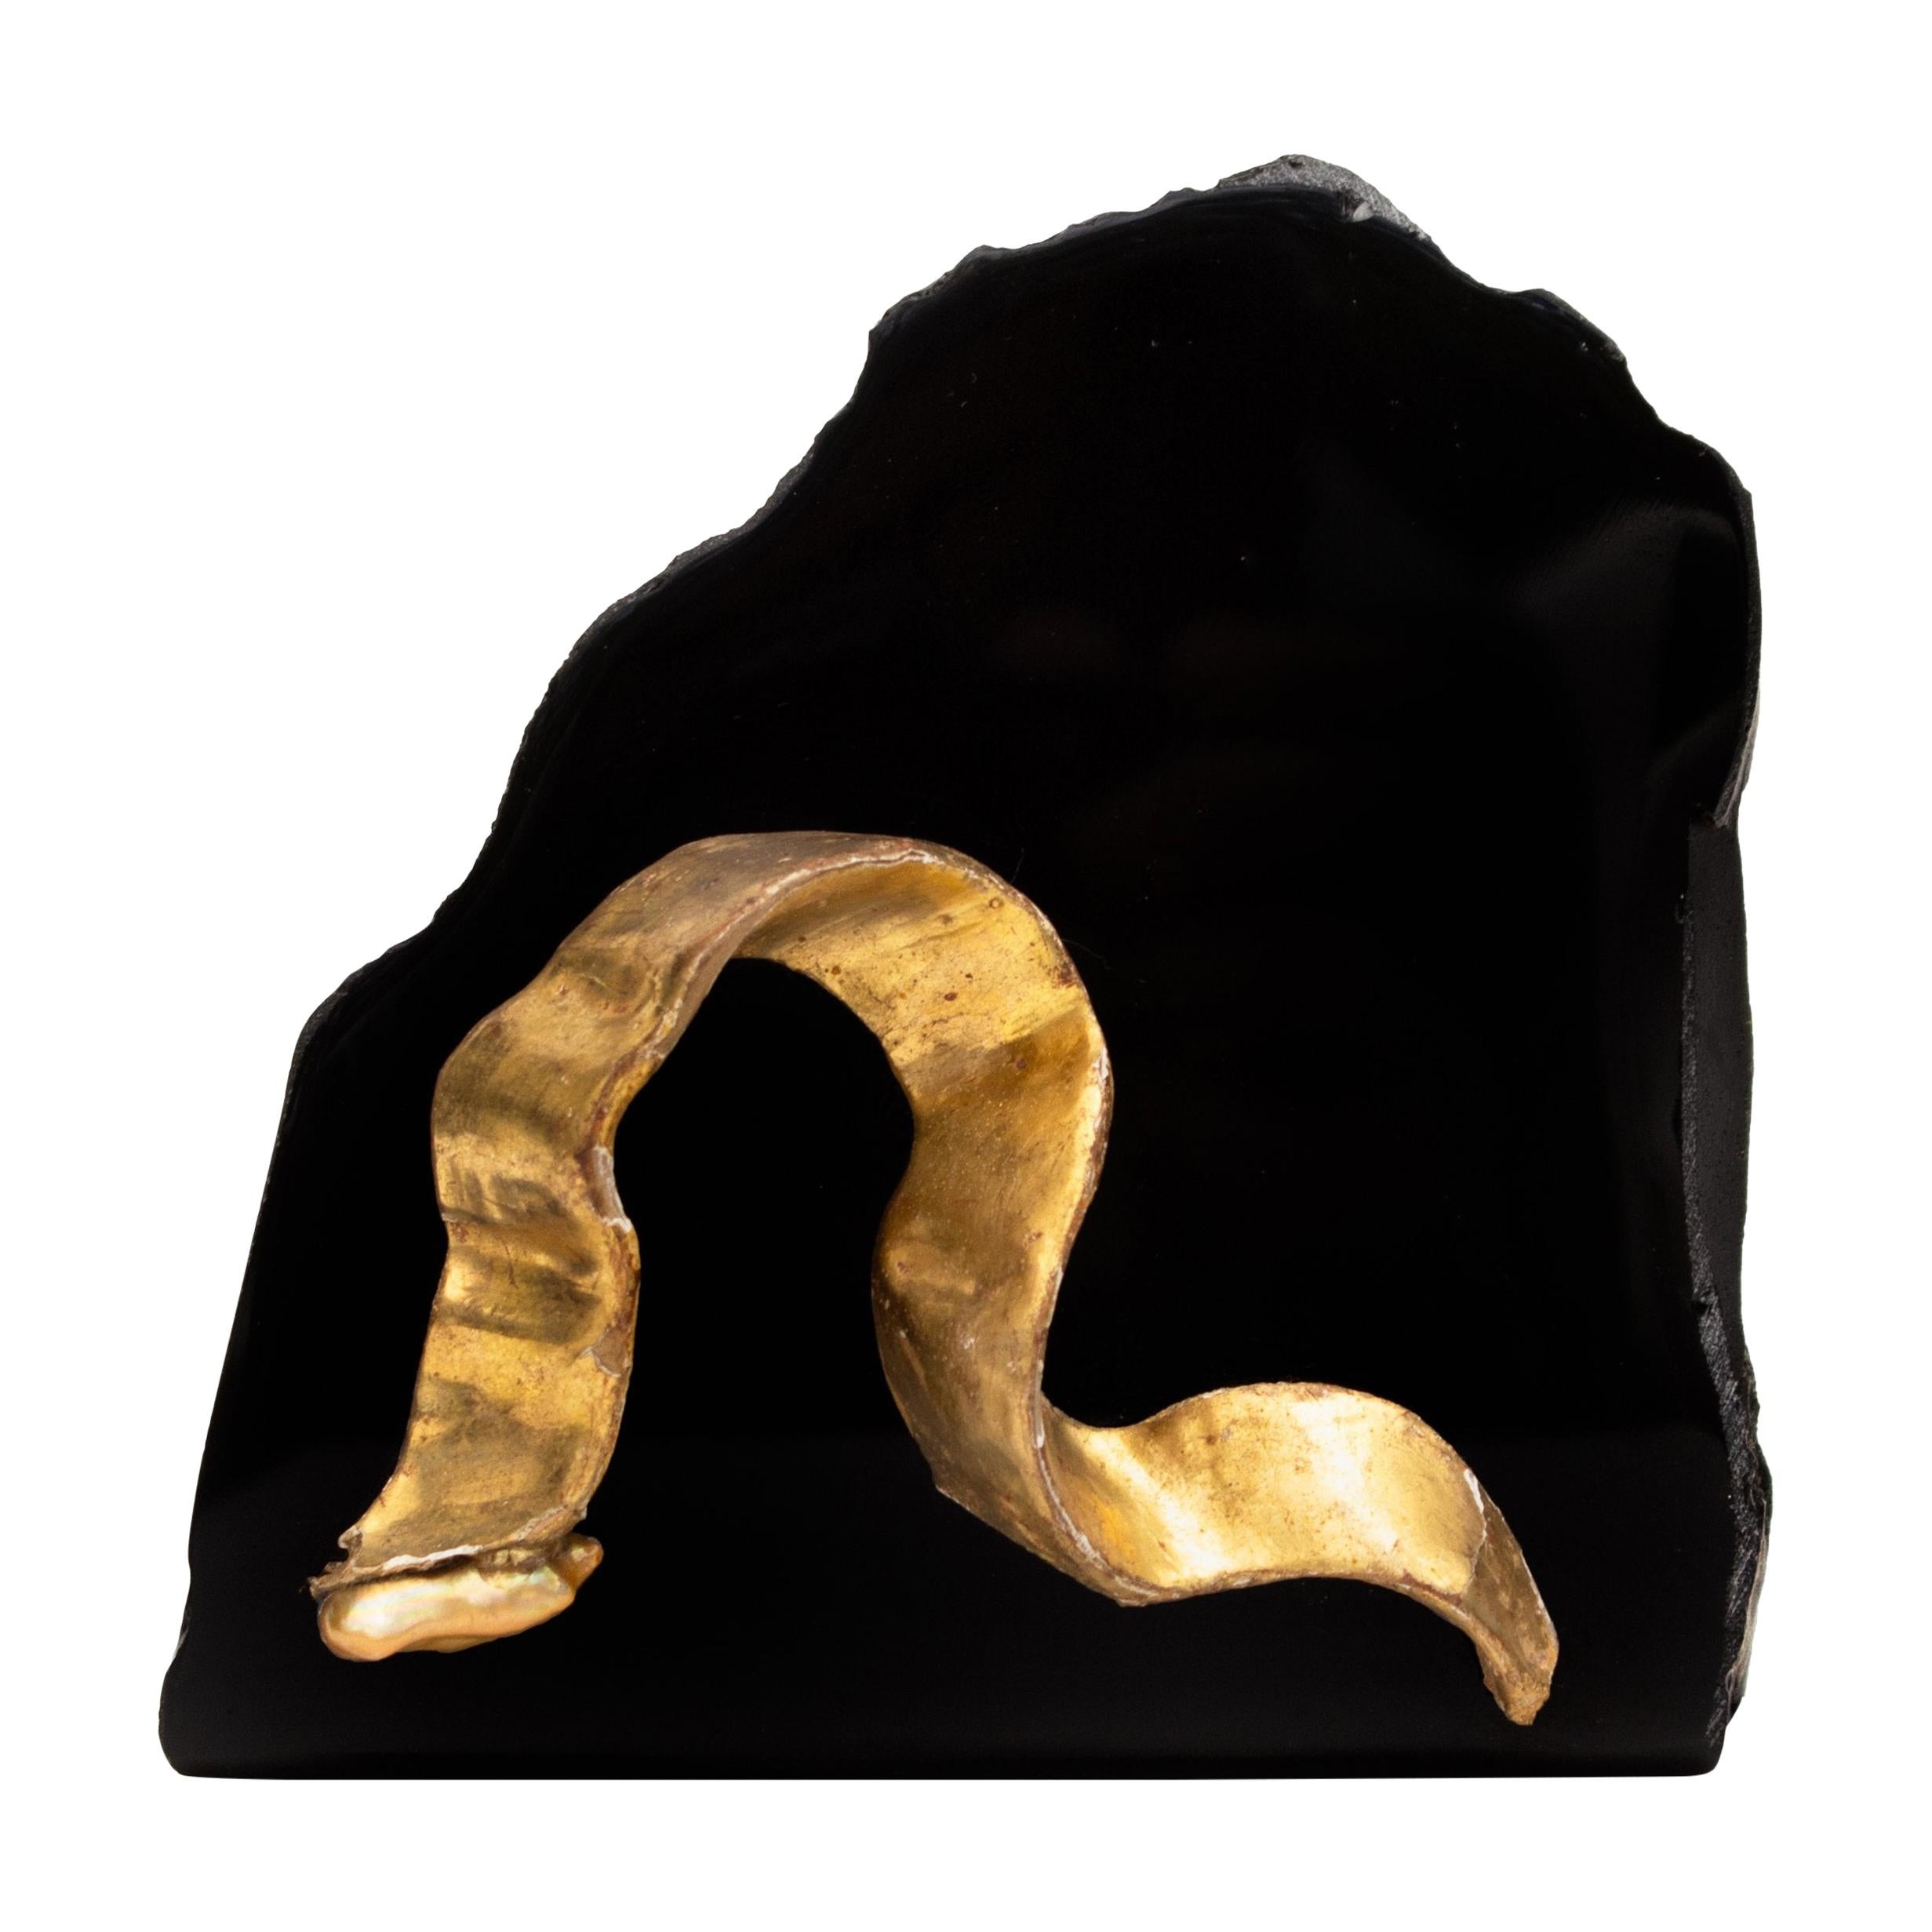 Fragment de ruban en or italien du 18ème siècle avec une perle baroque sur obsidienne